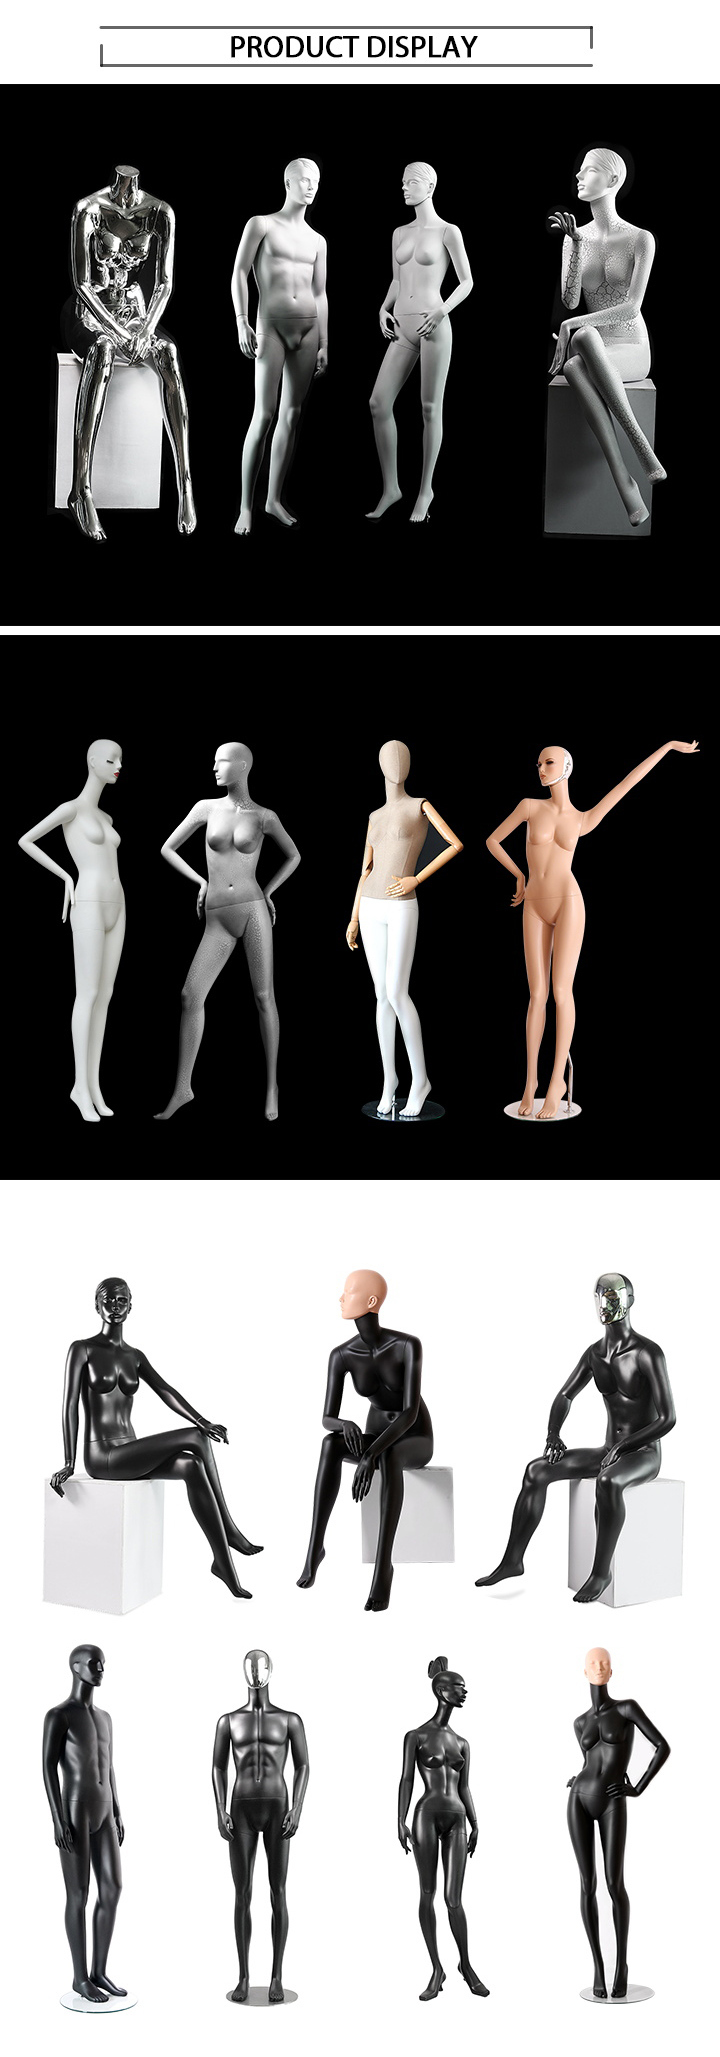 Custom Matt Black Full Body Male Mannequin Display Models